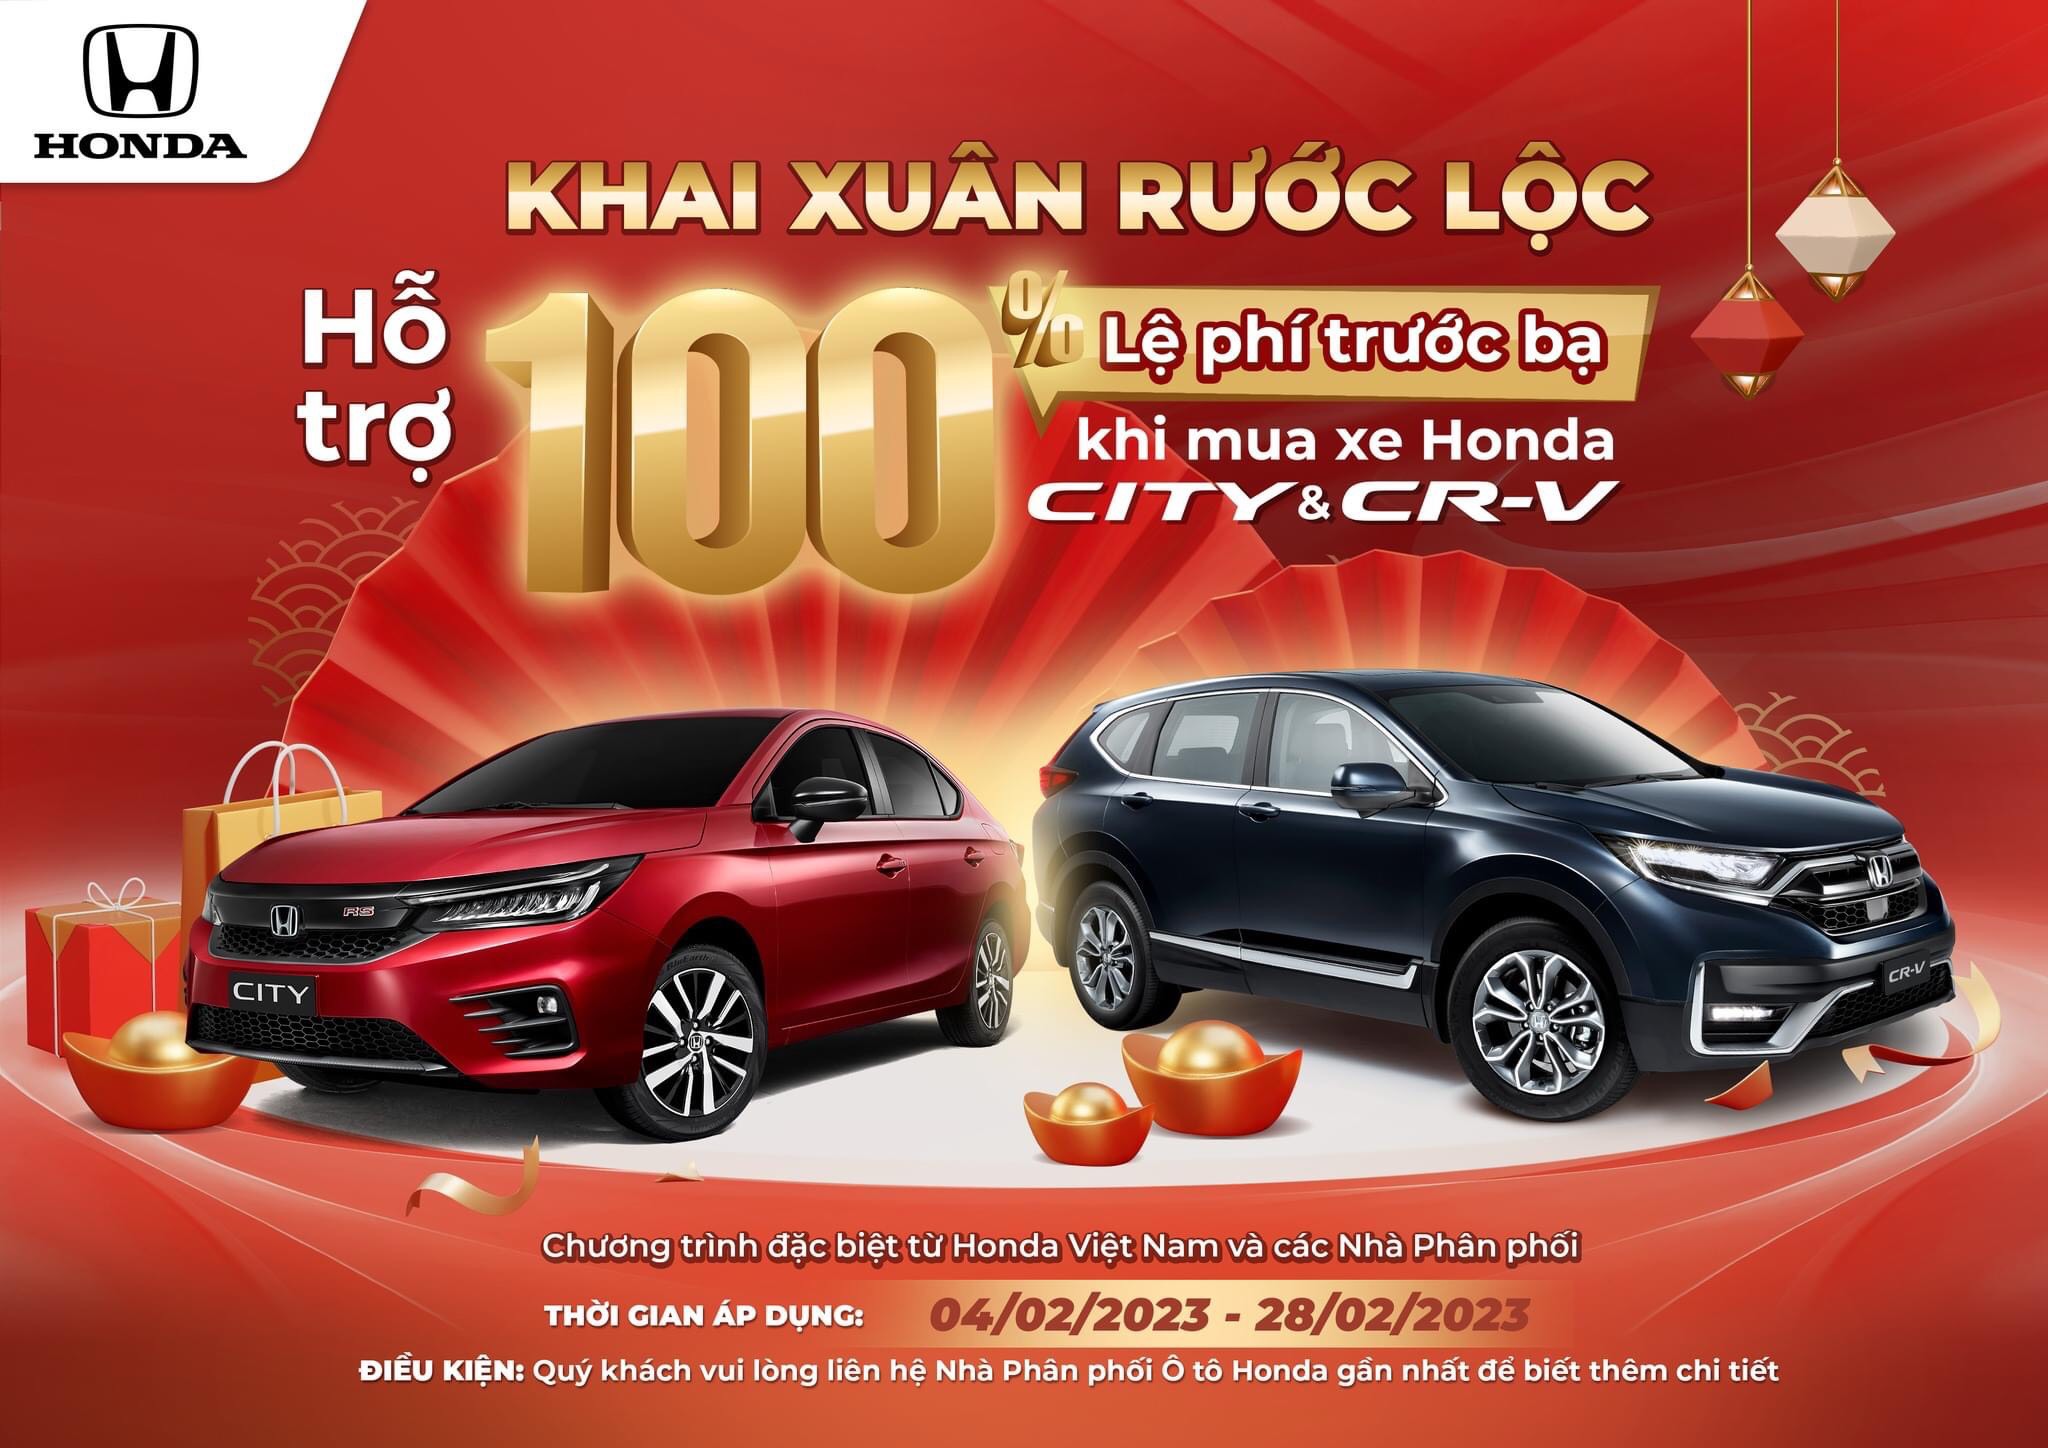 Tổng hợp danh sách 10 cửa hàng Honda Quảng Ninh dành cho bạn  Top 10 Quảng  Ninh